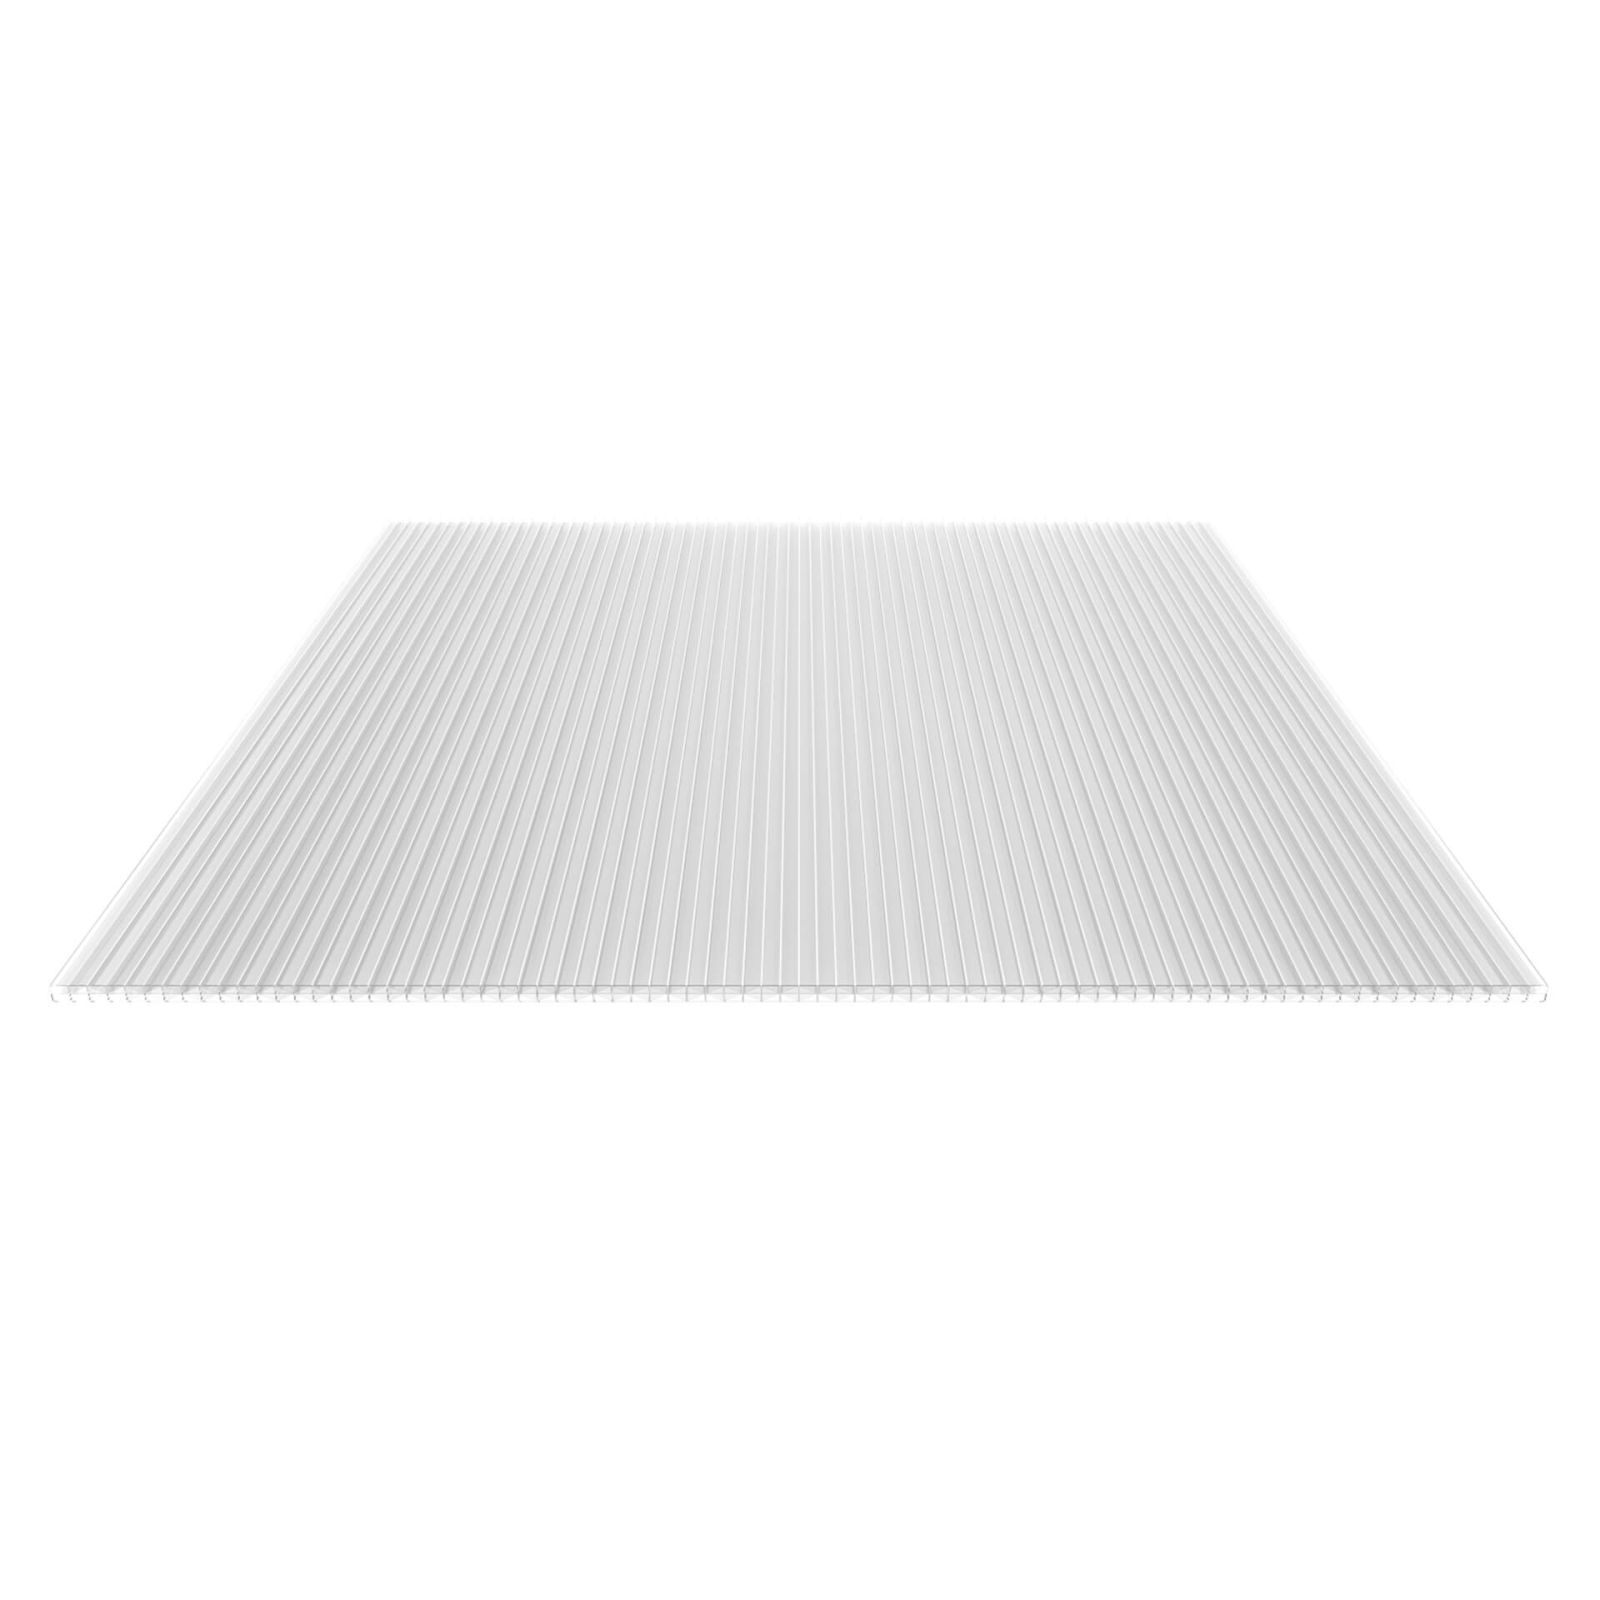 Polycarbonat Stegplatte | 16 mm | Profil Mendiger | Sparpaket | Plattenbreite 1200 mm | Klar | Extra stark | Breite 3,75 m | Länge 2,00 m #4